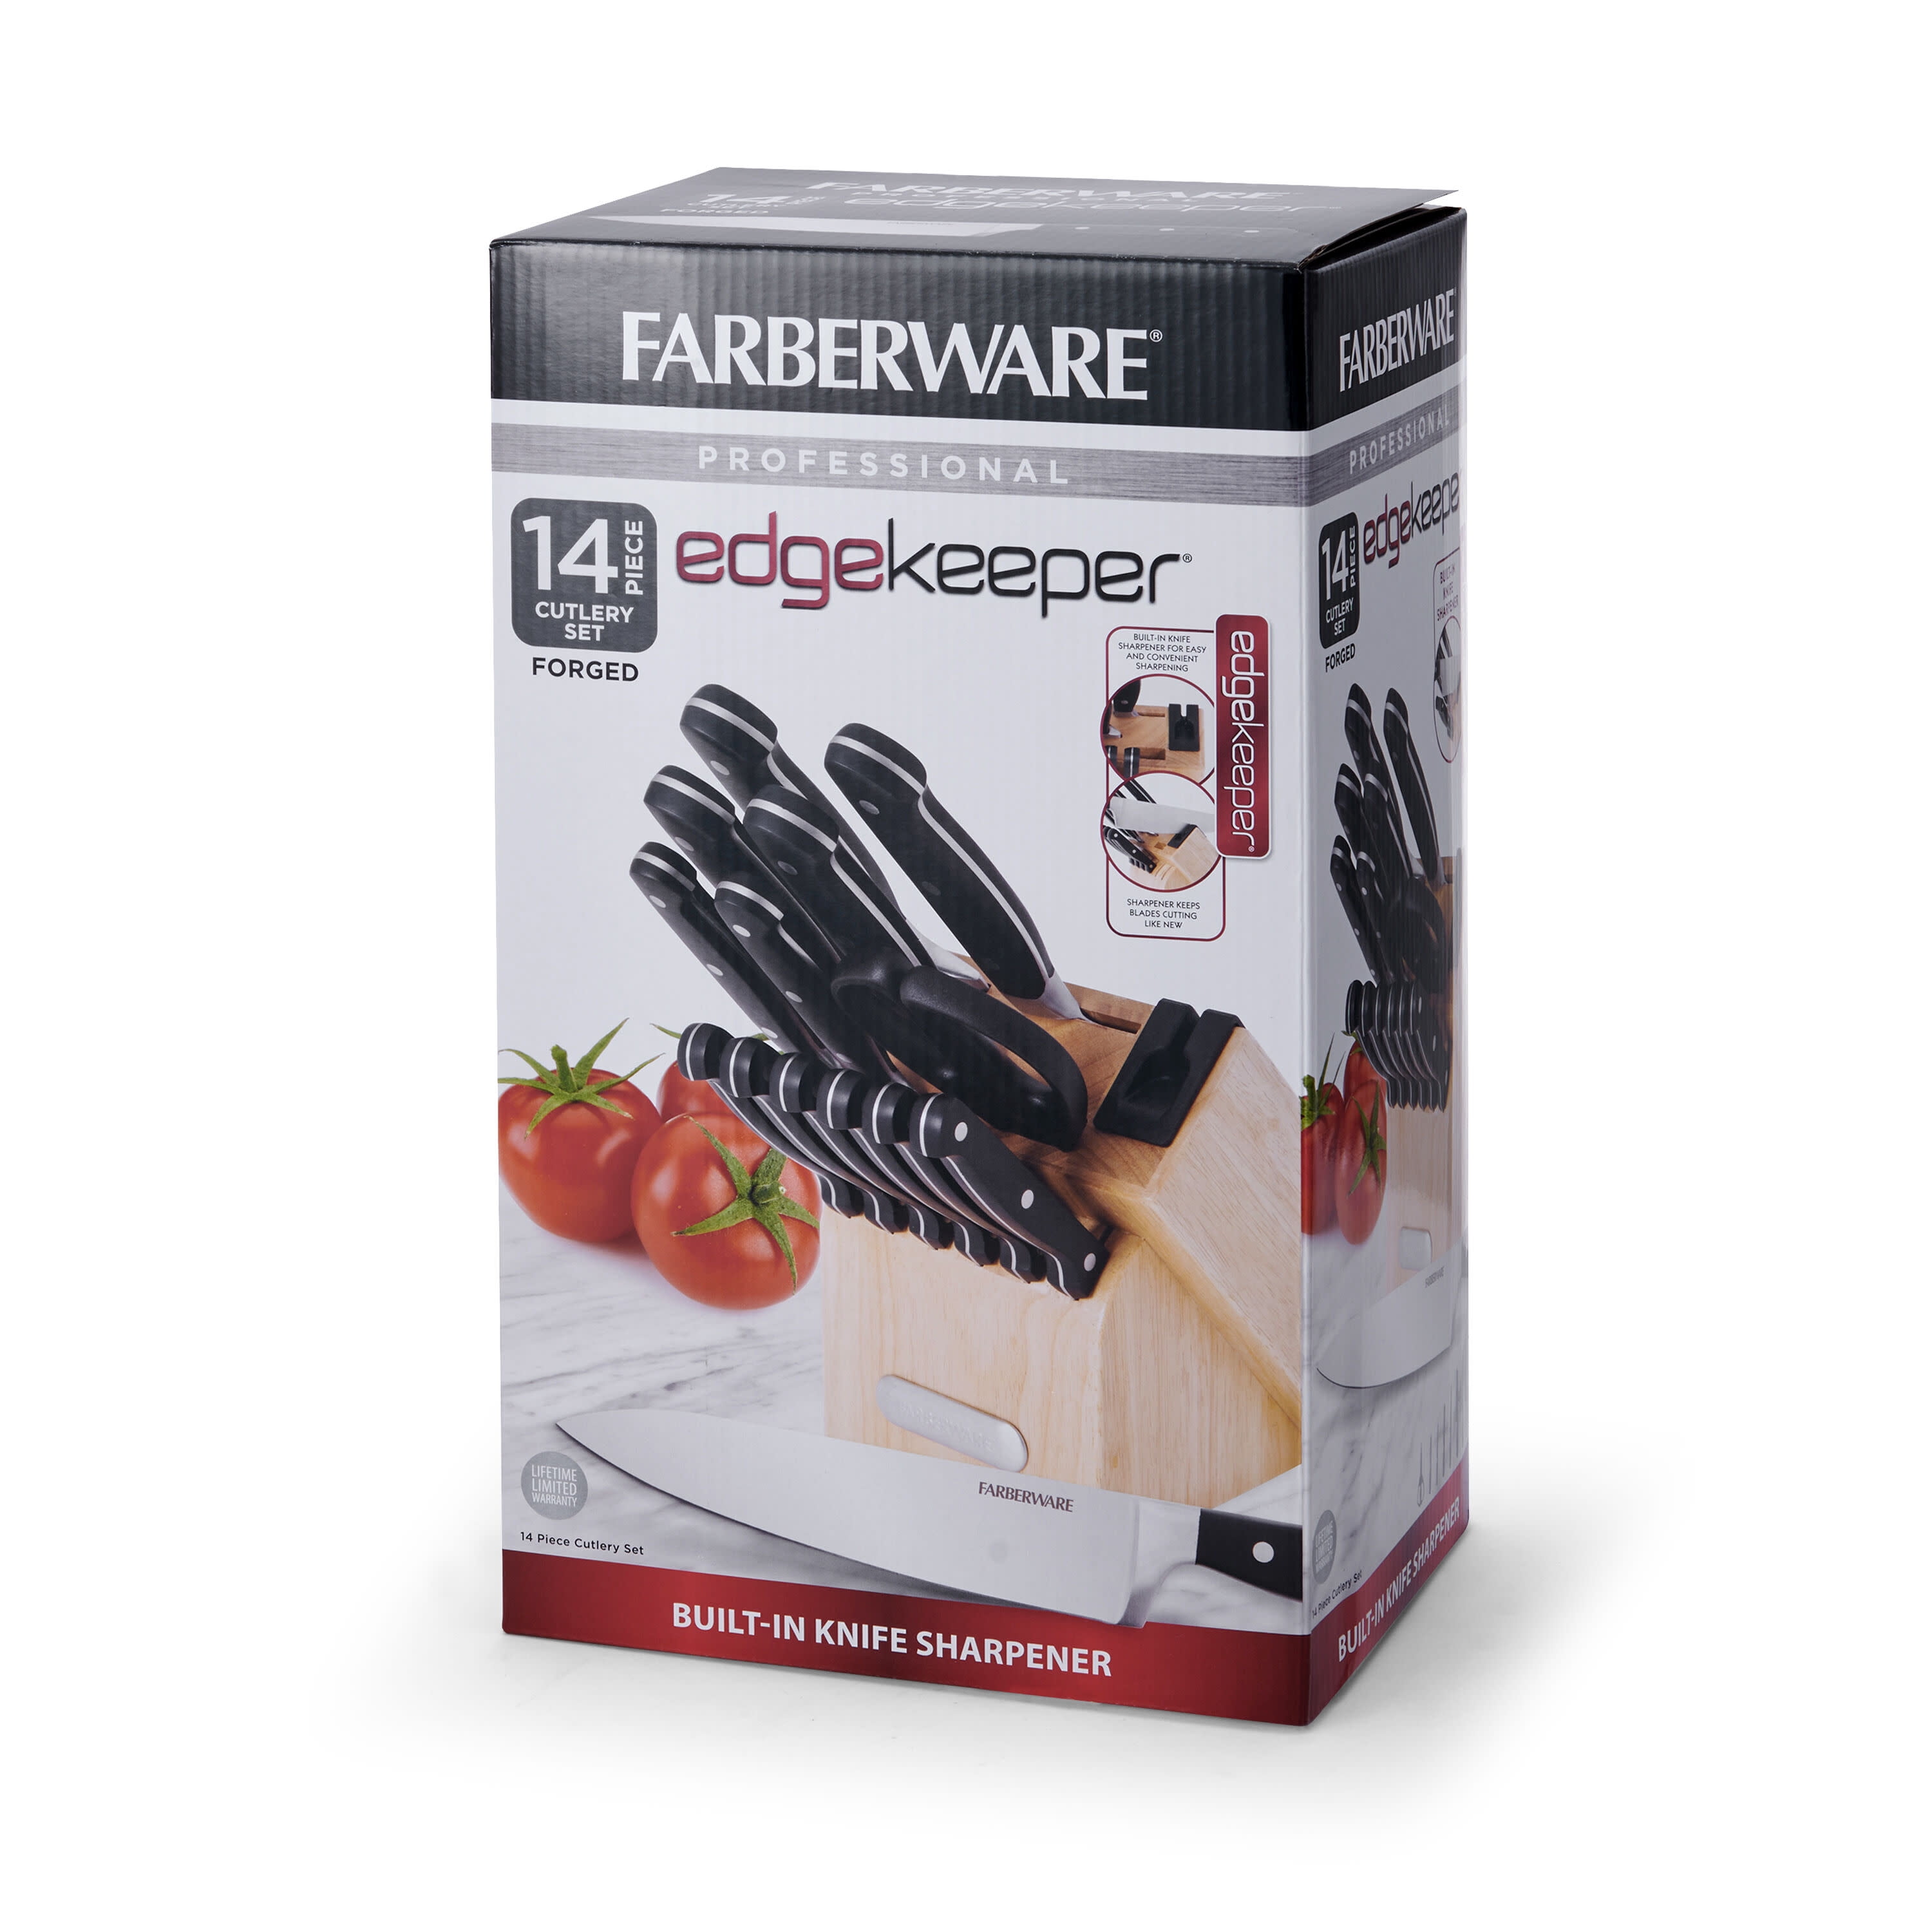 Farberware Edgekeeper Set with Built-In Sharpener, 14 Piece